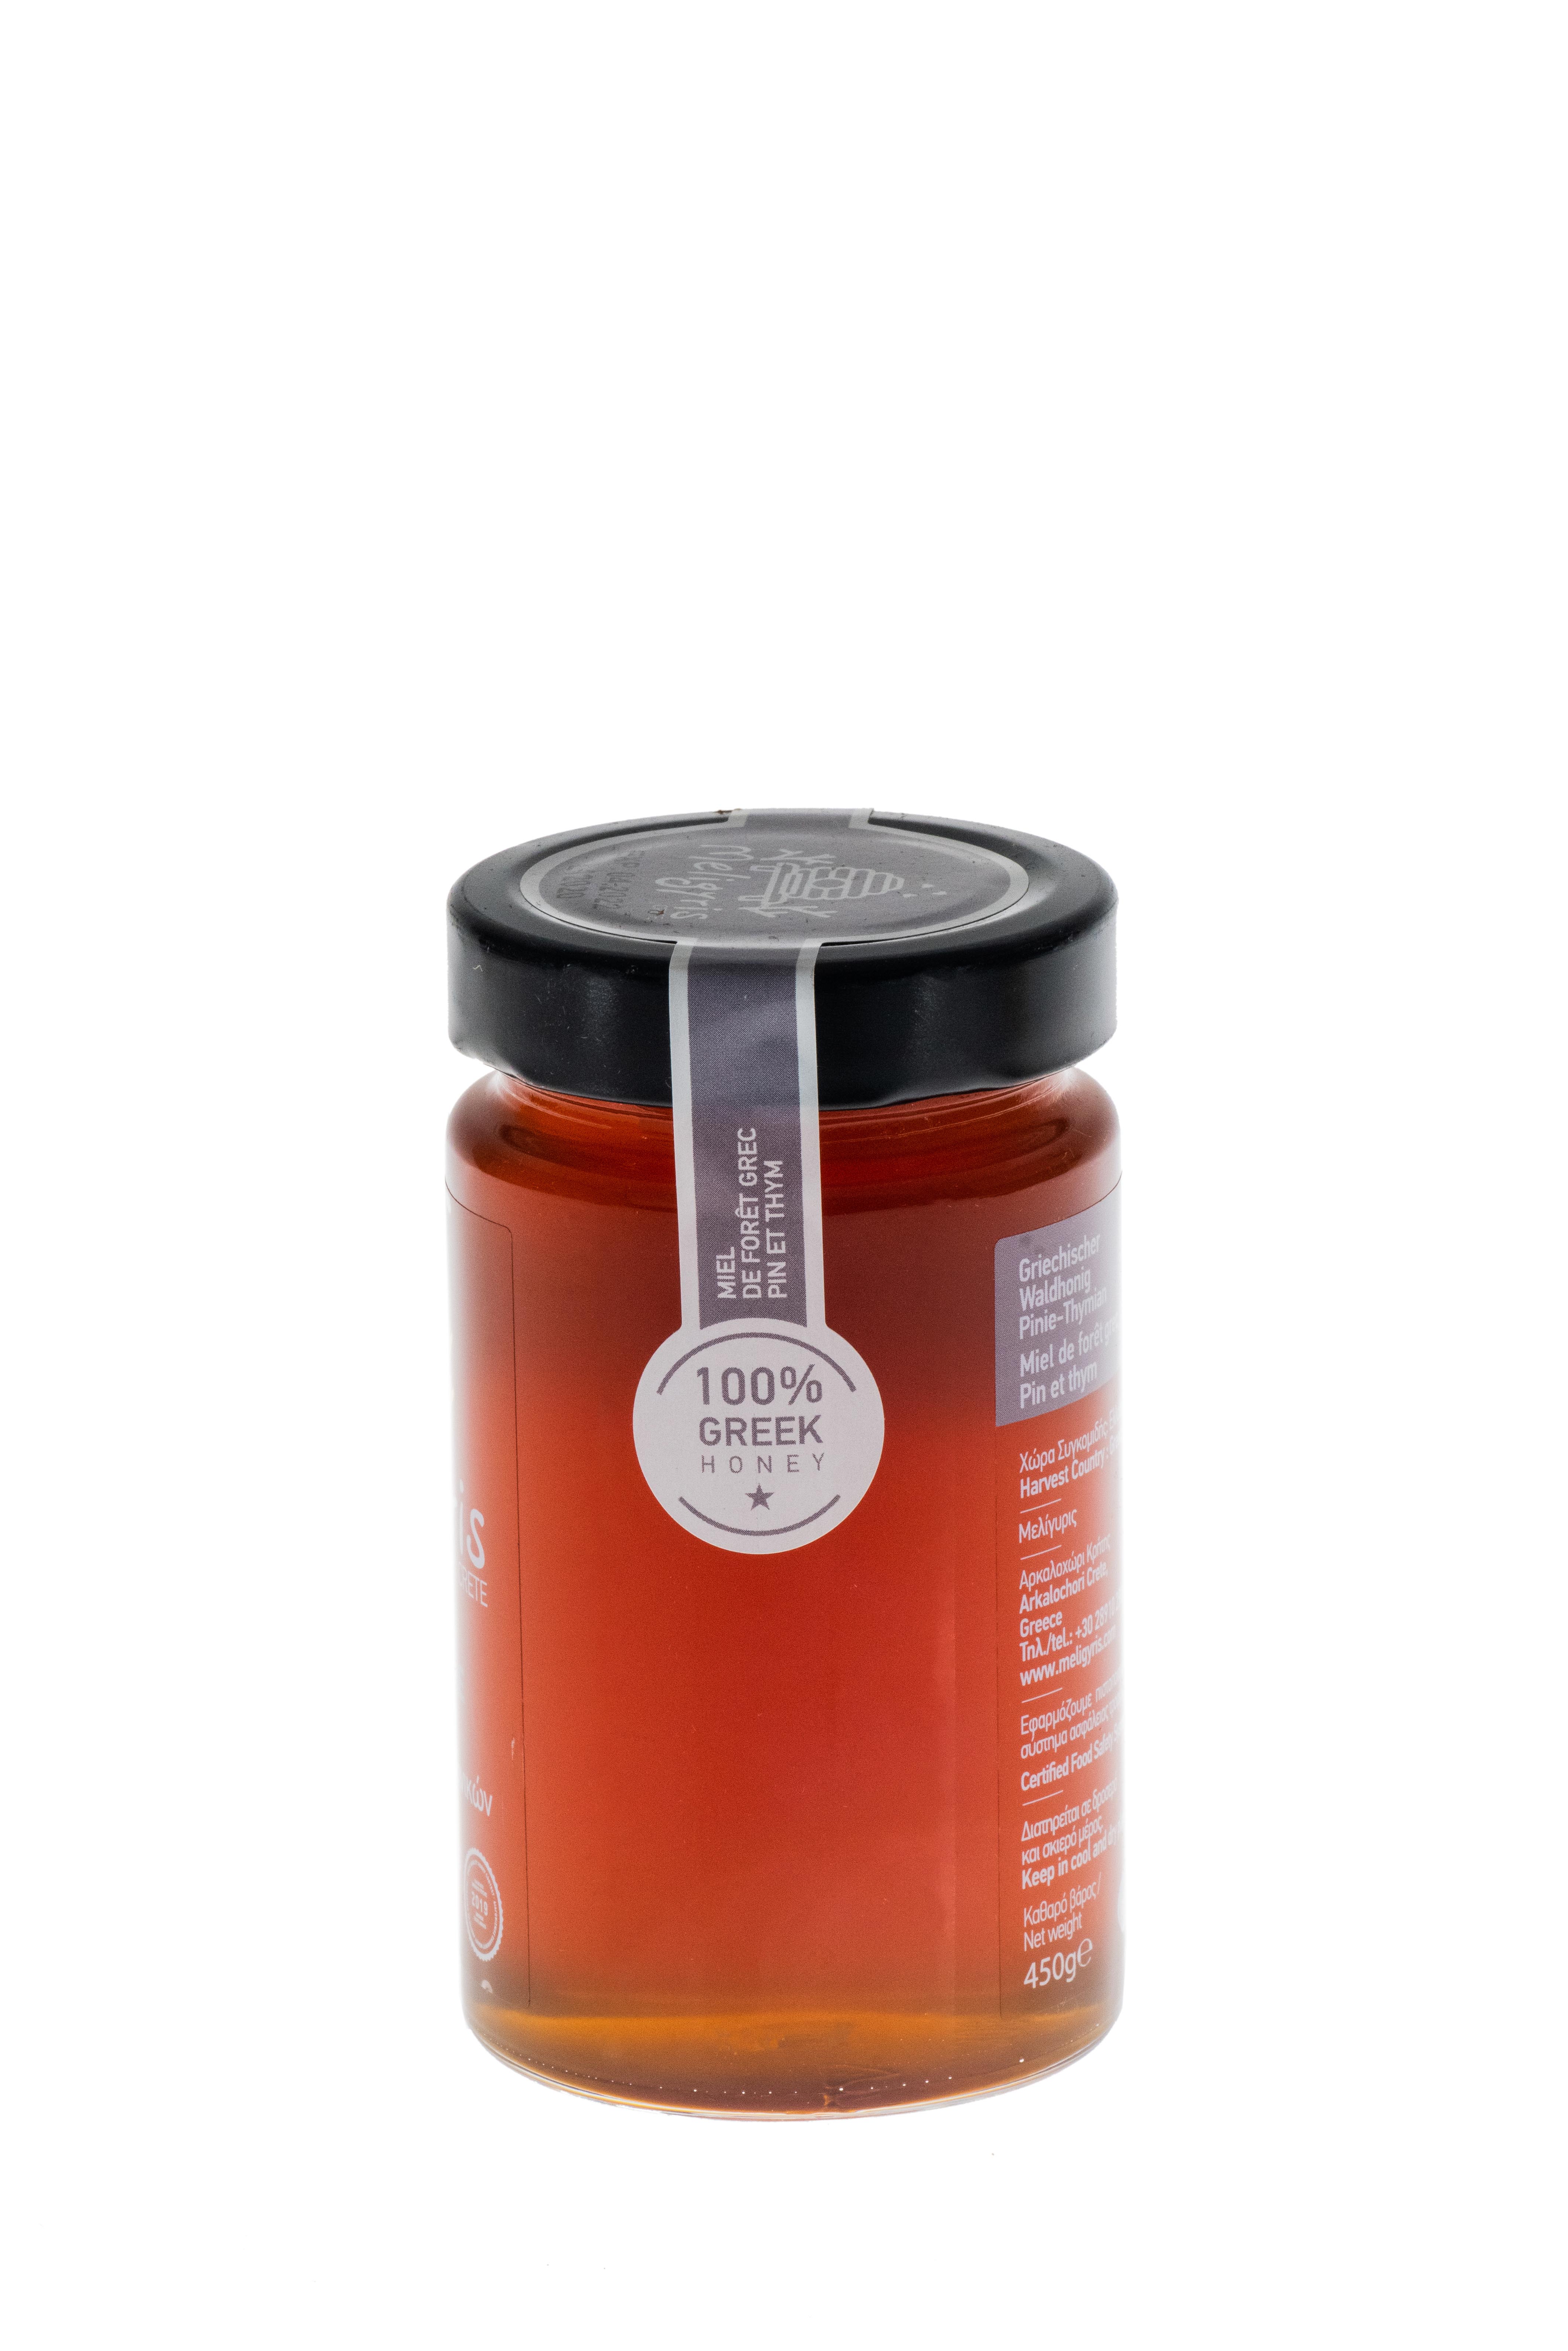 Griechischer Kiefern-Thymian-Honig 450 g